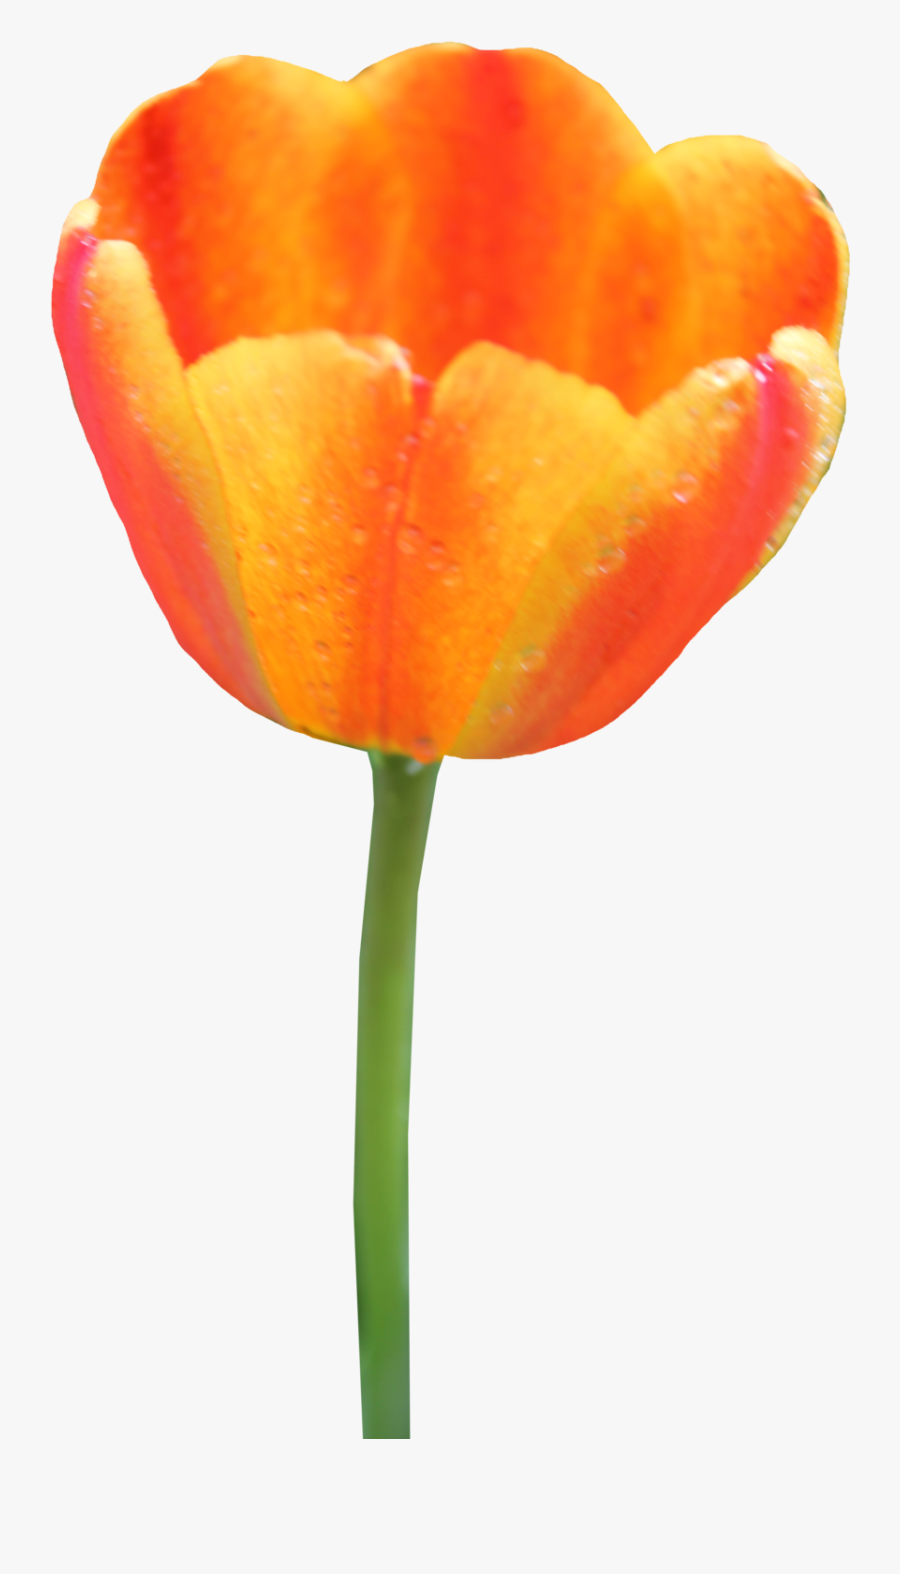 Orange Tulip Transparent Background, Transparent Clipart